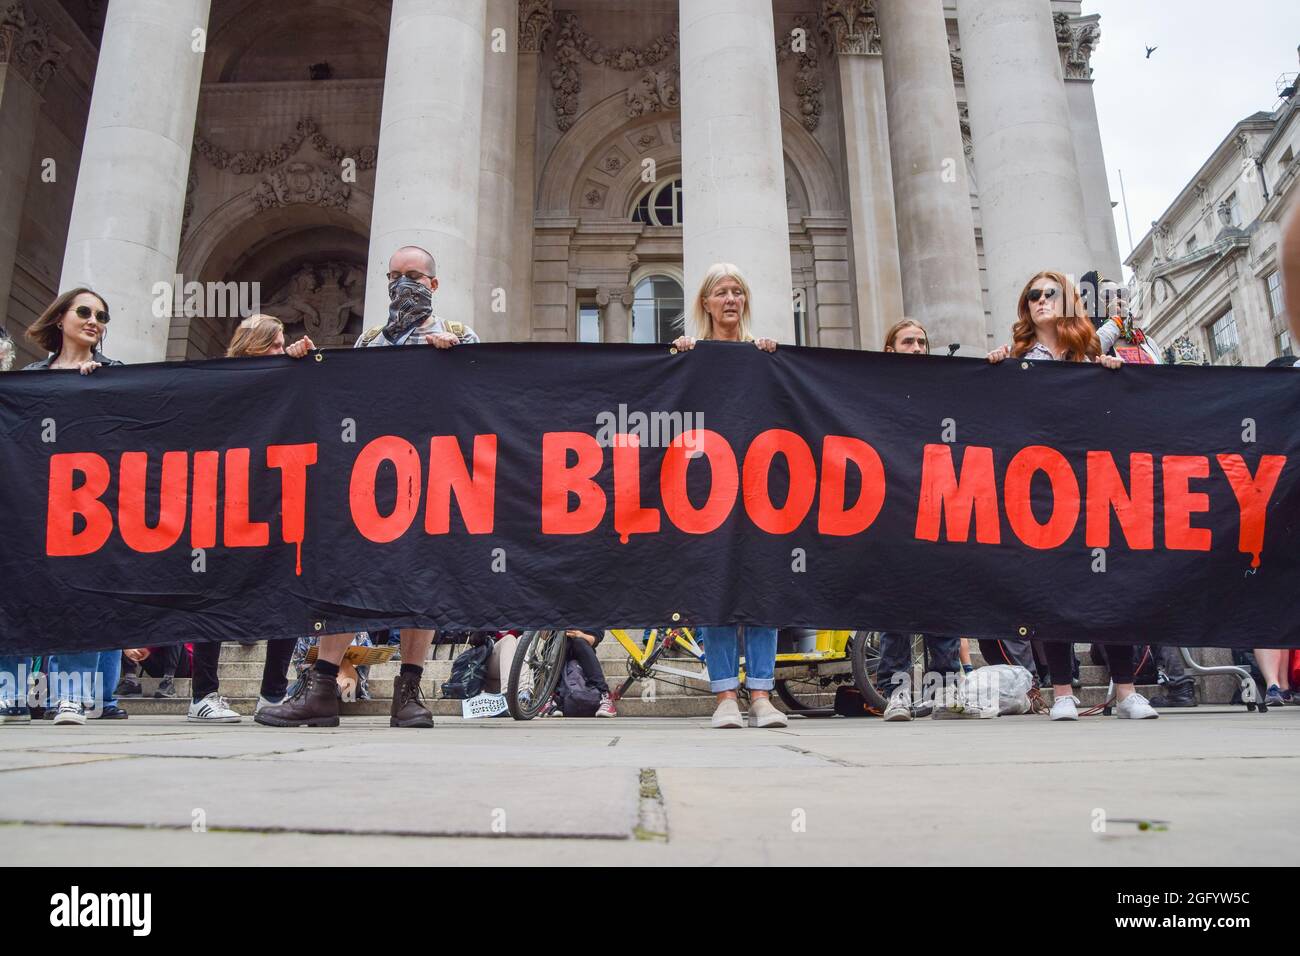 Londres, Royaume-Uni. 27 août 2021. Extinction les manifestants de la rébellion devant la Bourse royale, une partie de leur Marche de l'argent du sang visant la ville de Londres. (Crédit : Vuk Valcic / Alamy Live News) Banque D'Images